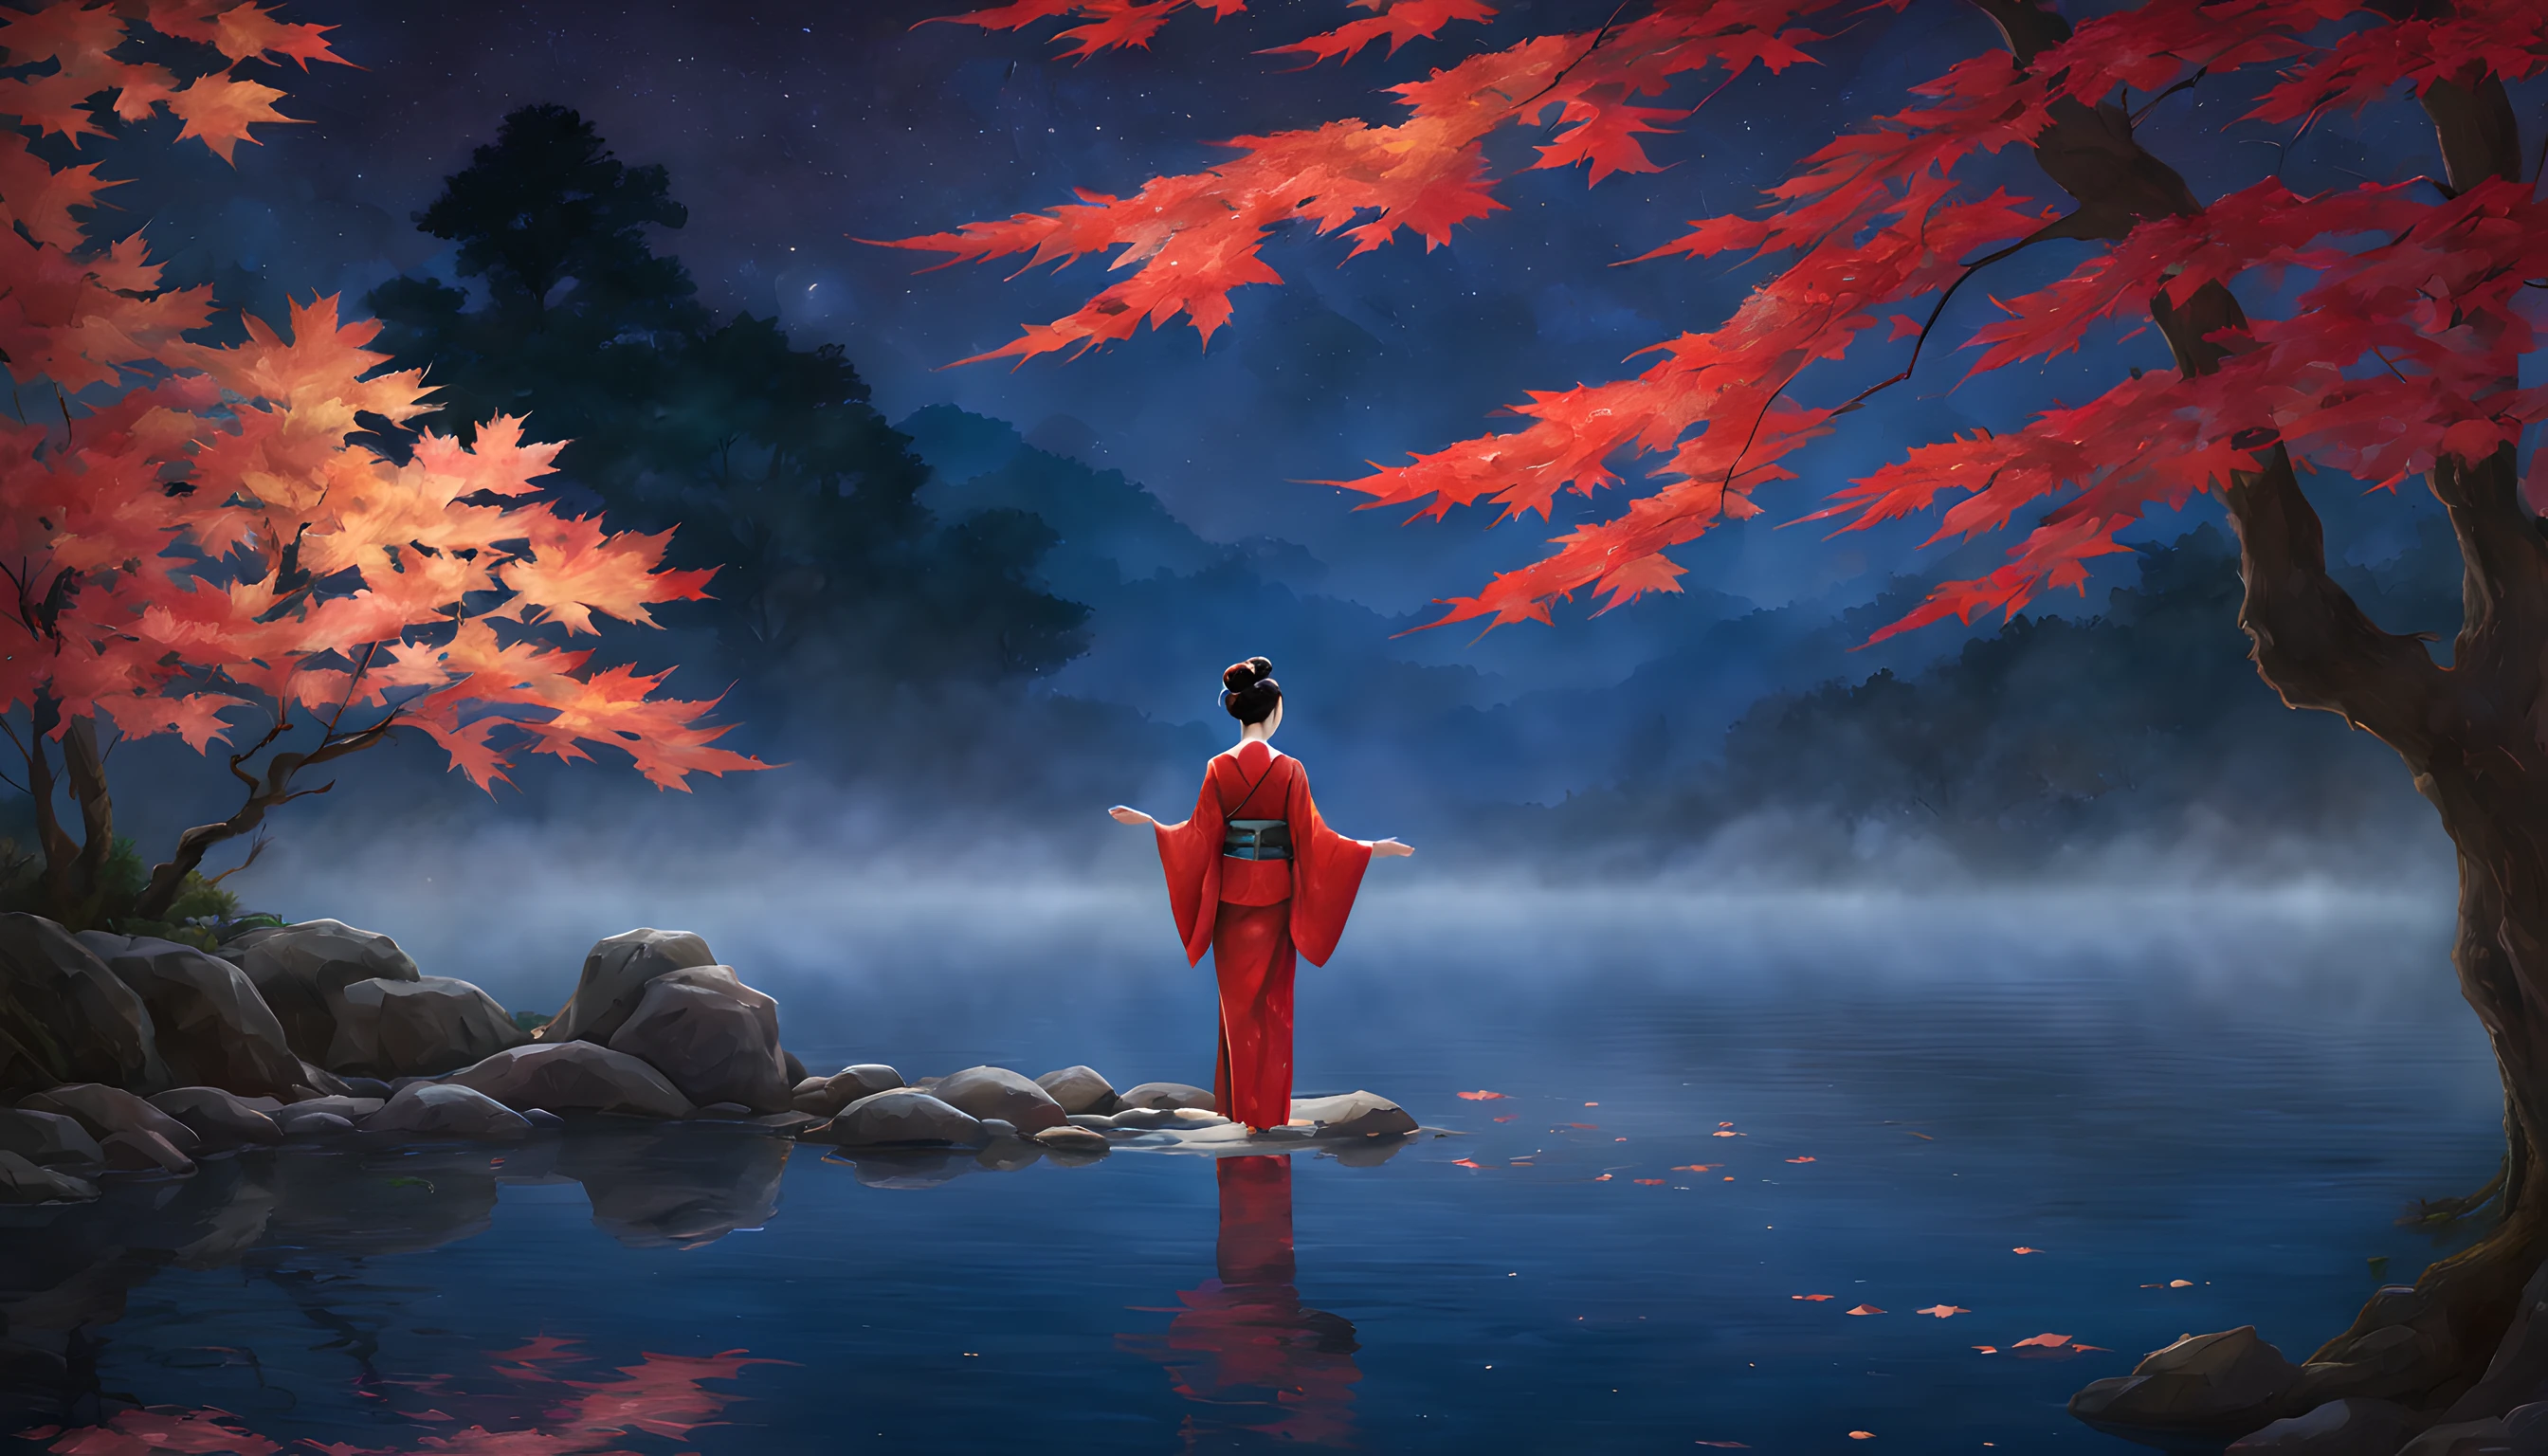 "단풍잎의 불타는 듯한 빛깔로 둘러싸인 고요한 연못을 특징으로 하는 매혹적인 밤의 풍경을 구성해보세요.. 구도는 단풍잎과 근처에 서 있는 장엄한 단풍나무의 탁월함을 강조해야 합니다.. 전경에서, 40대 일본 여성이 우아하게 서 있다, 선명한 빨간색 기모노를 입은. 기모노는 그녀의 우아함을 더욱 돋보이게 합니다., 그리고 그녀의 아름다움은 달빛 아래서 빛난다. 그녀는 시대를 초월한 매력의 비전입니다, 계절의 본질을 포착하다. 여자는 반짝이는 연못을 바라보고 있다, 단풍잎이 수면에 반사되어 춤추는 곳. 그녀의 표정은 고요한 사색 중 하나입니다, 그녀가 밤의 고요한 아름다움에 빠져드는 동안. 배경은 웅장한 단풍나무를 보여줍니다., 달빛을 받은 듯한 찬란한 잎으로 장식된 가지들. 연못은 천상의 풍경을 반영합니다., 순간의 매력을 더하다. 전체적인 구성은 자연의 아름다움에 대한 평온함과 존경심을 불러일으켜야 합니다.. 여성의 매혹적인 아름다움과 단풍잎의 광채가 이 매혹적인 가을 풍경의 중심이 되도록 하세요.."